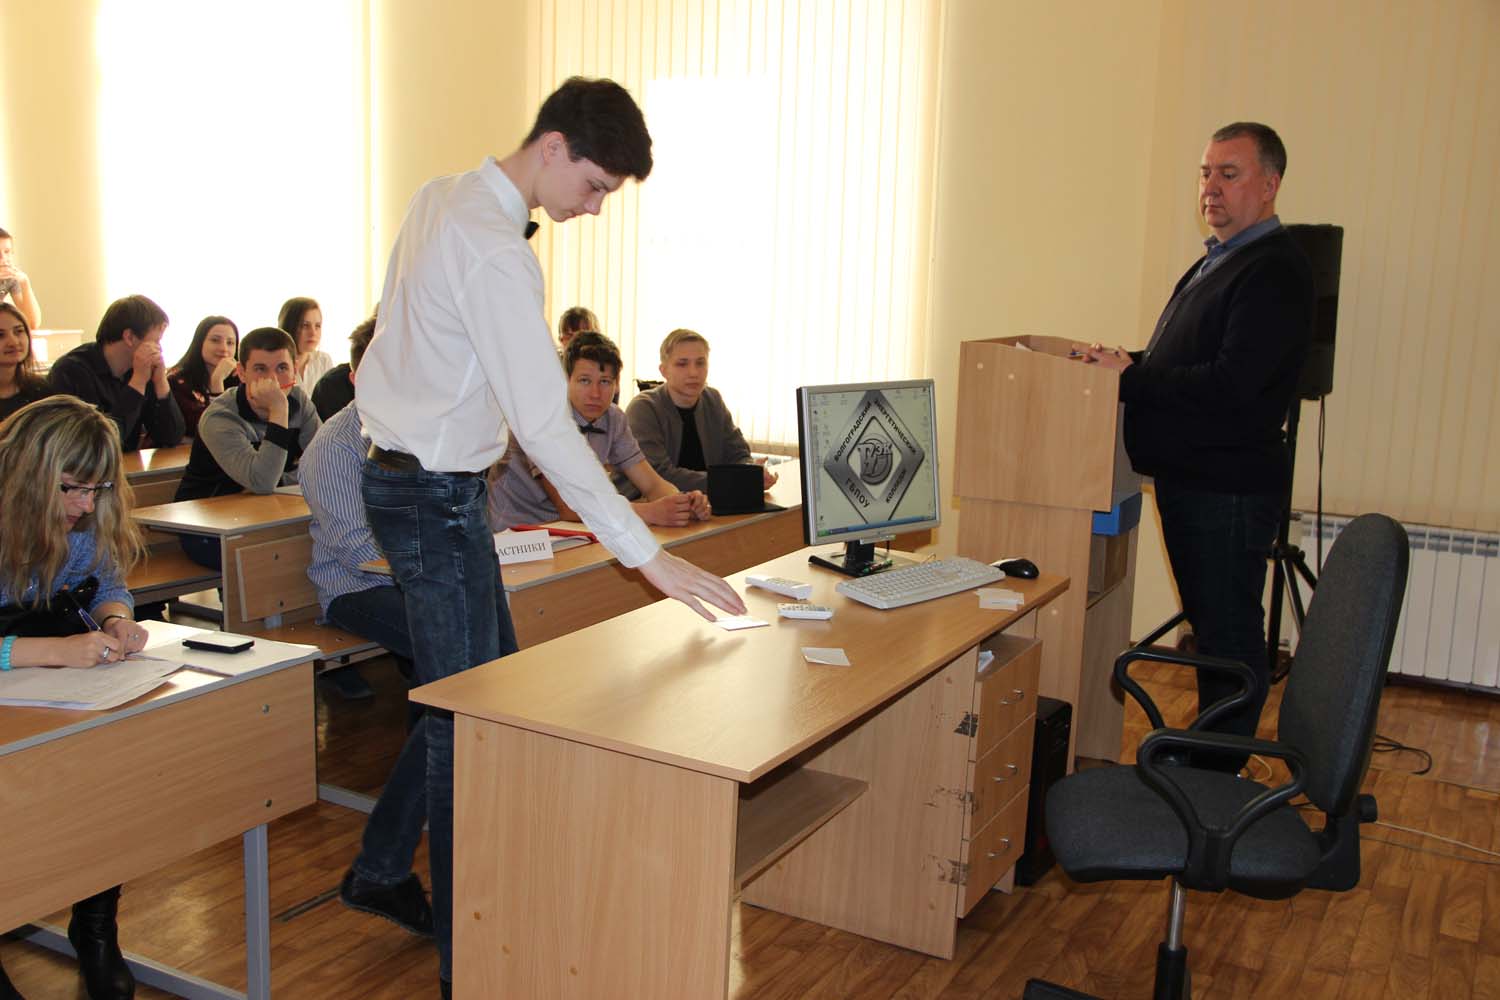 Открытая защита проектов обучающихся профессиональных образовательных организаций Кировского района